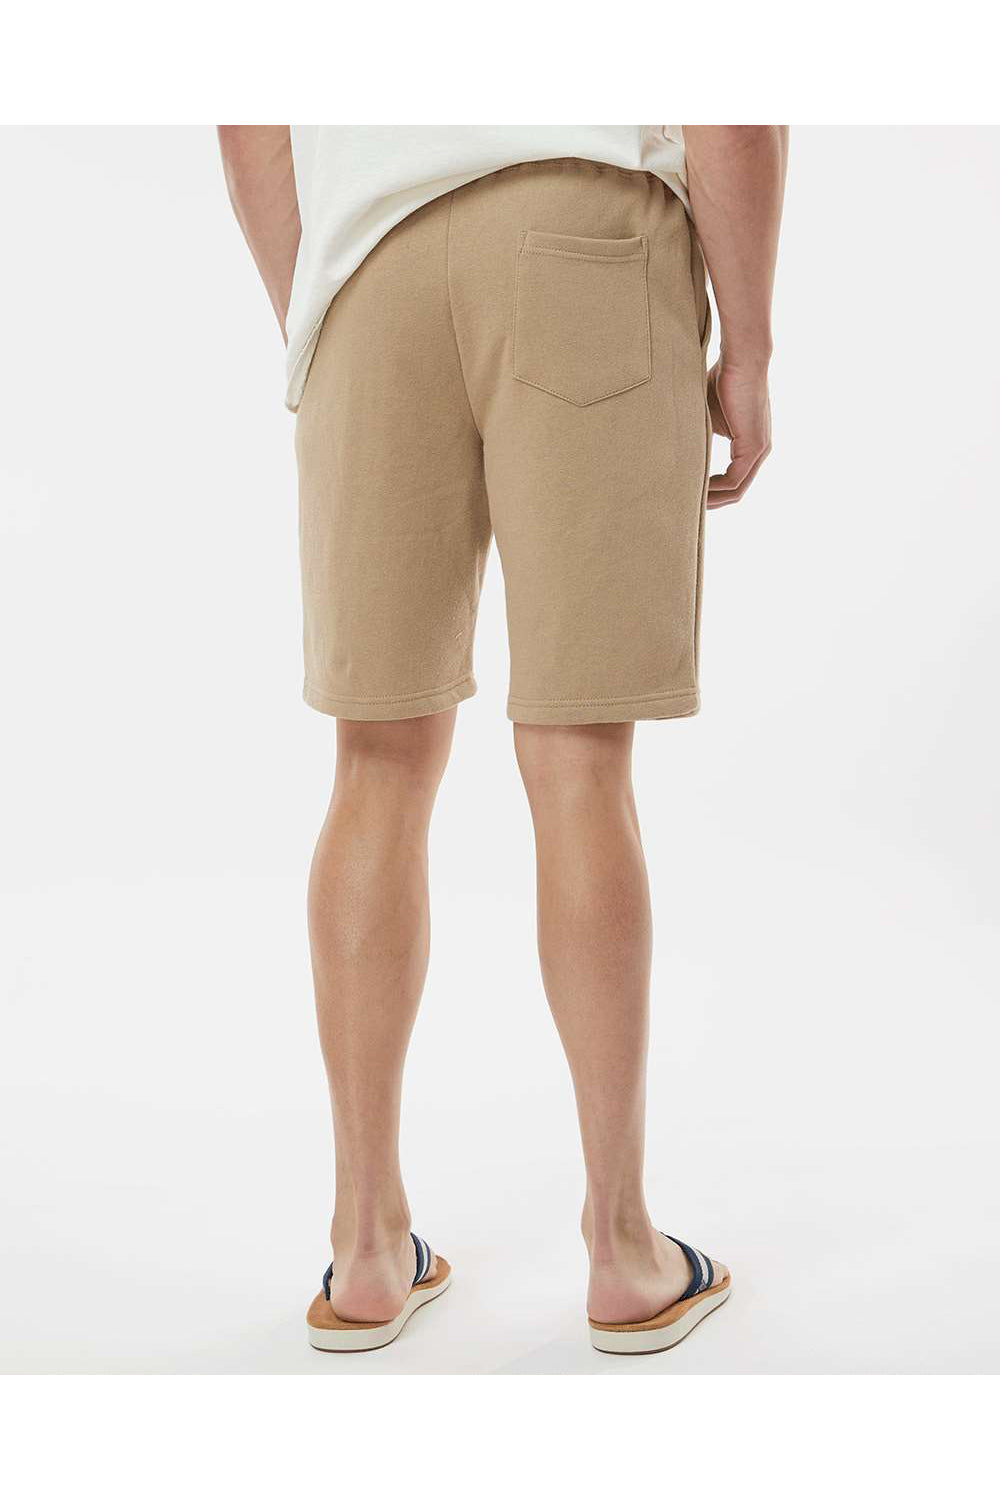 Independent Trading Co. IND20SRT Mens Fleece Shorts w/ Pockets Sandstone Brown Model Back